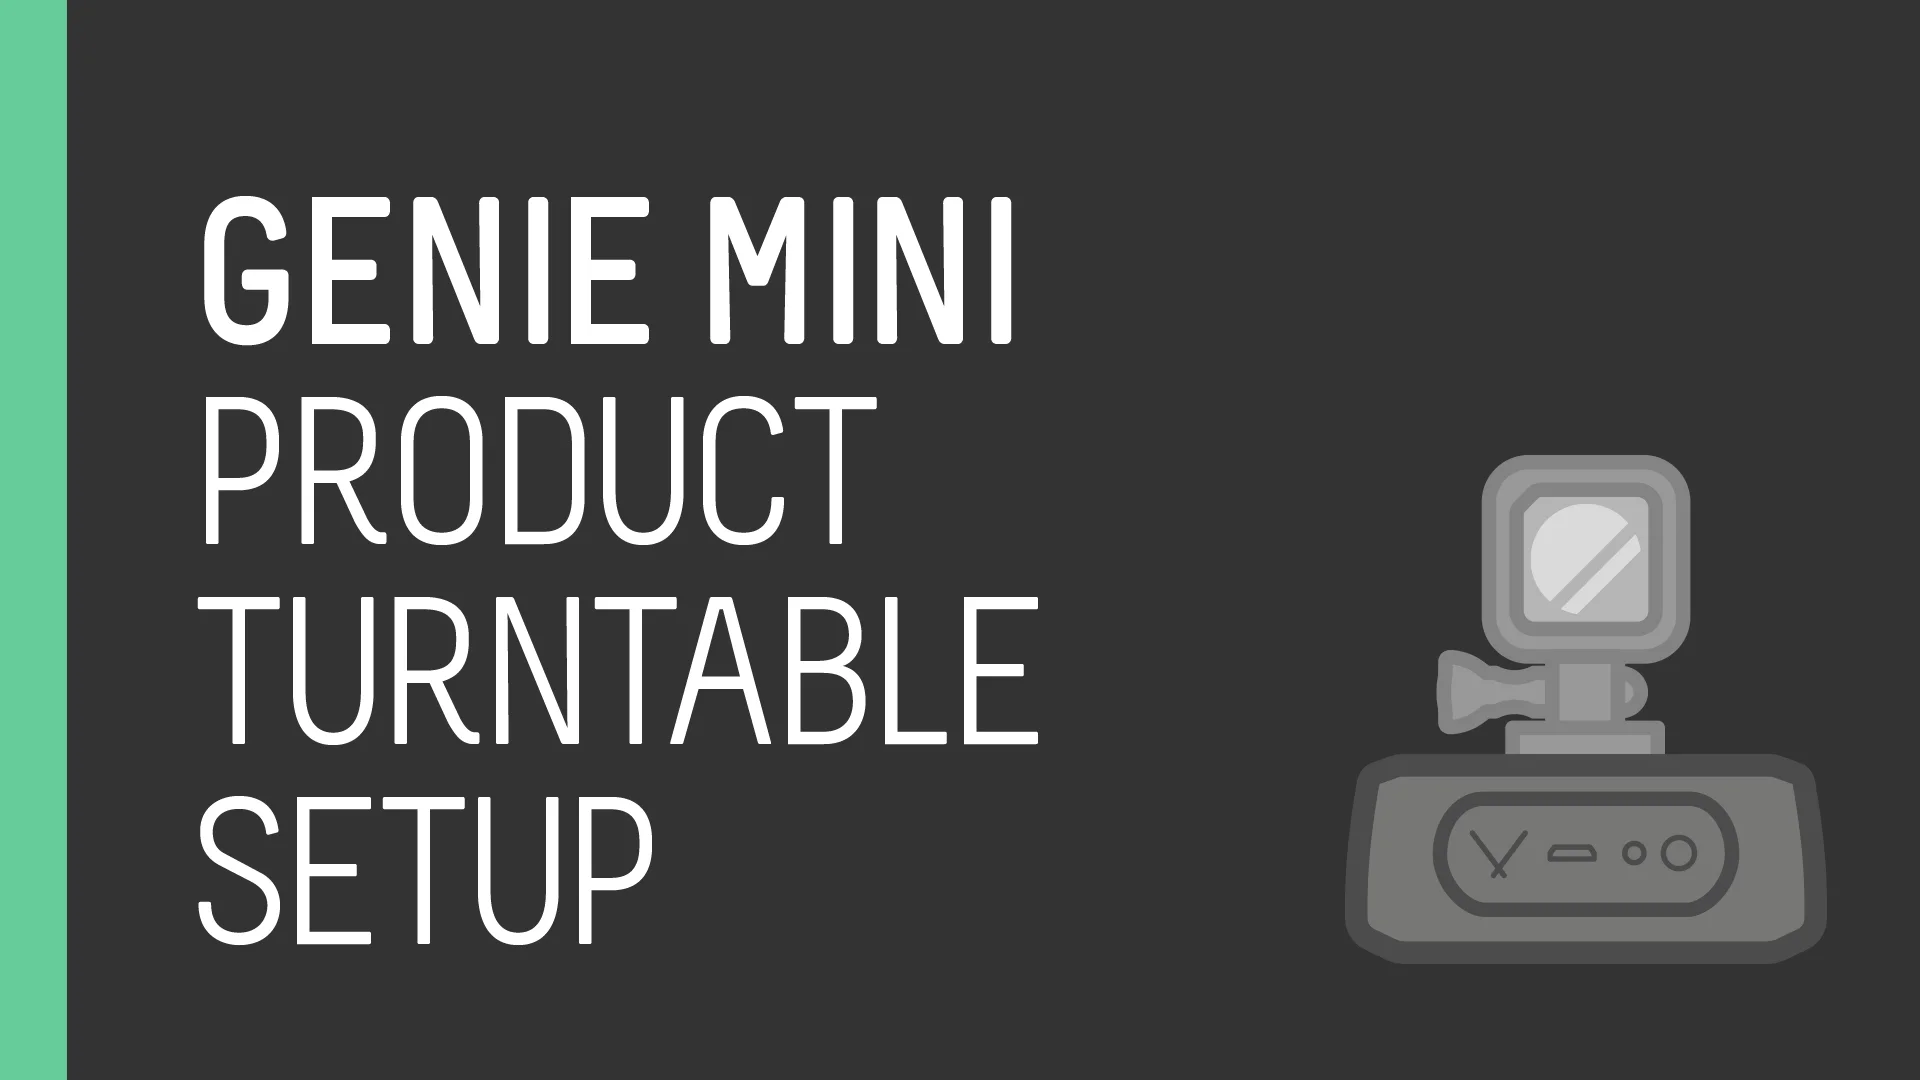 Tutorial - Product Turntable and Genie Mini Set Up on Vimeo